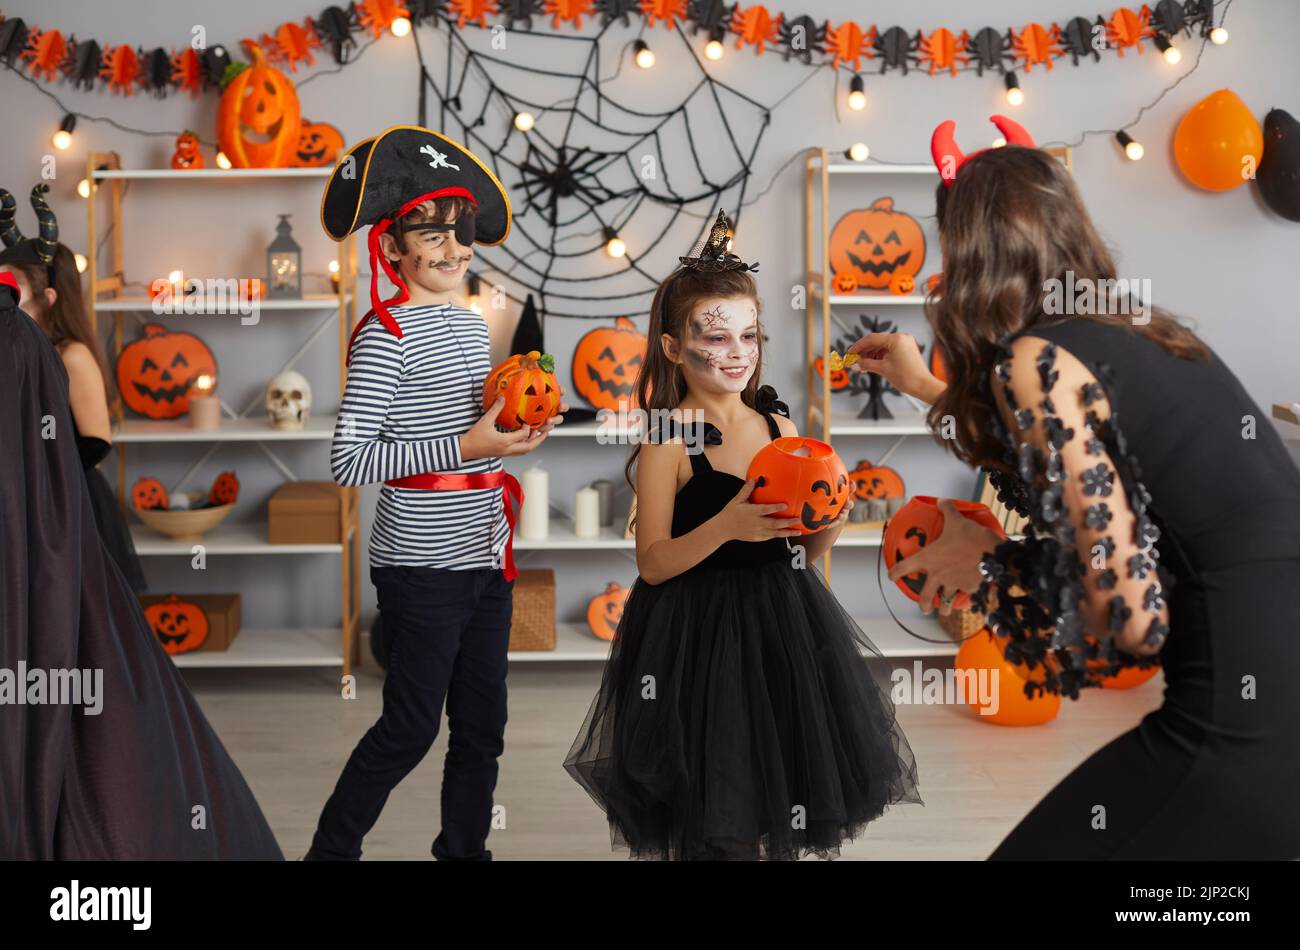 Frau auf der Halloween-Party gibt Süßigkeiten an Kinder, die in gruseligen Maskerade-Kostümen gekleidet sind. Stockfoto